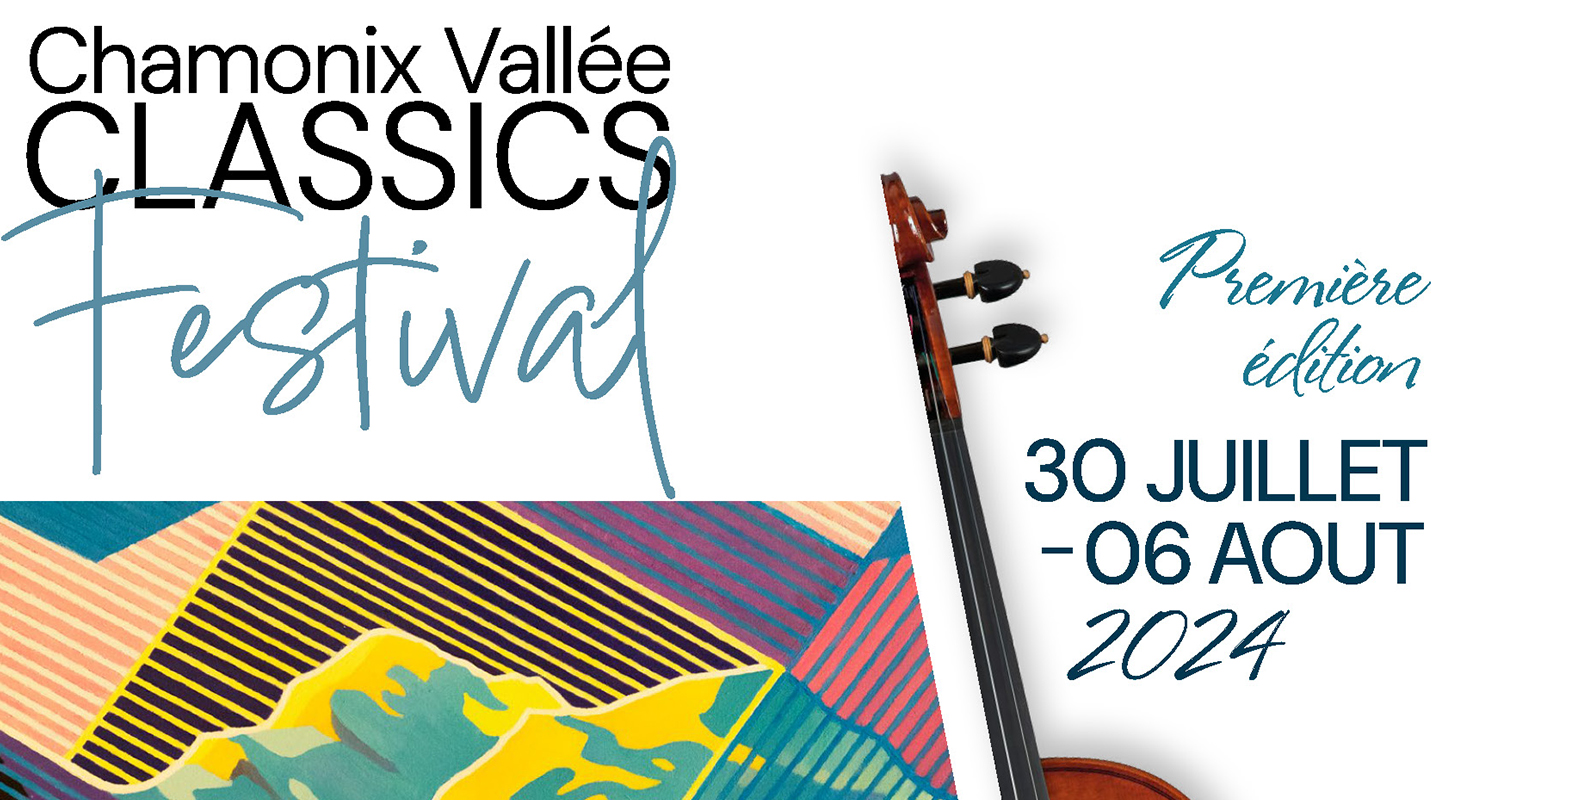 Chamonix Vallée Classics Festival, 1ère édition du 30 juillet au 06 août 2024